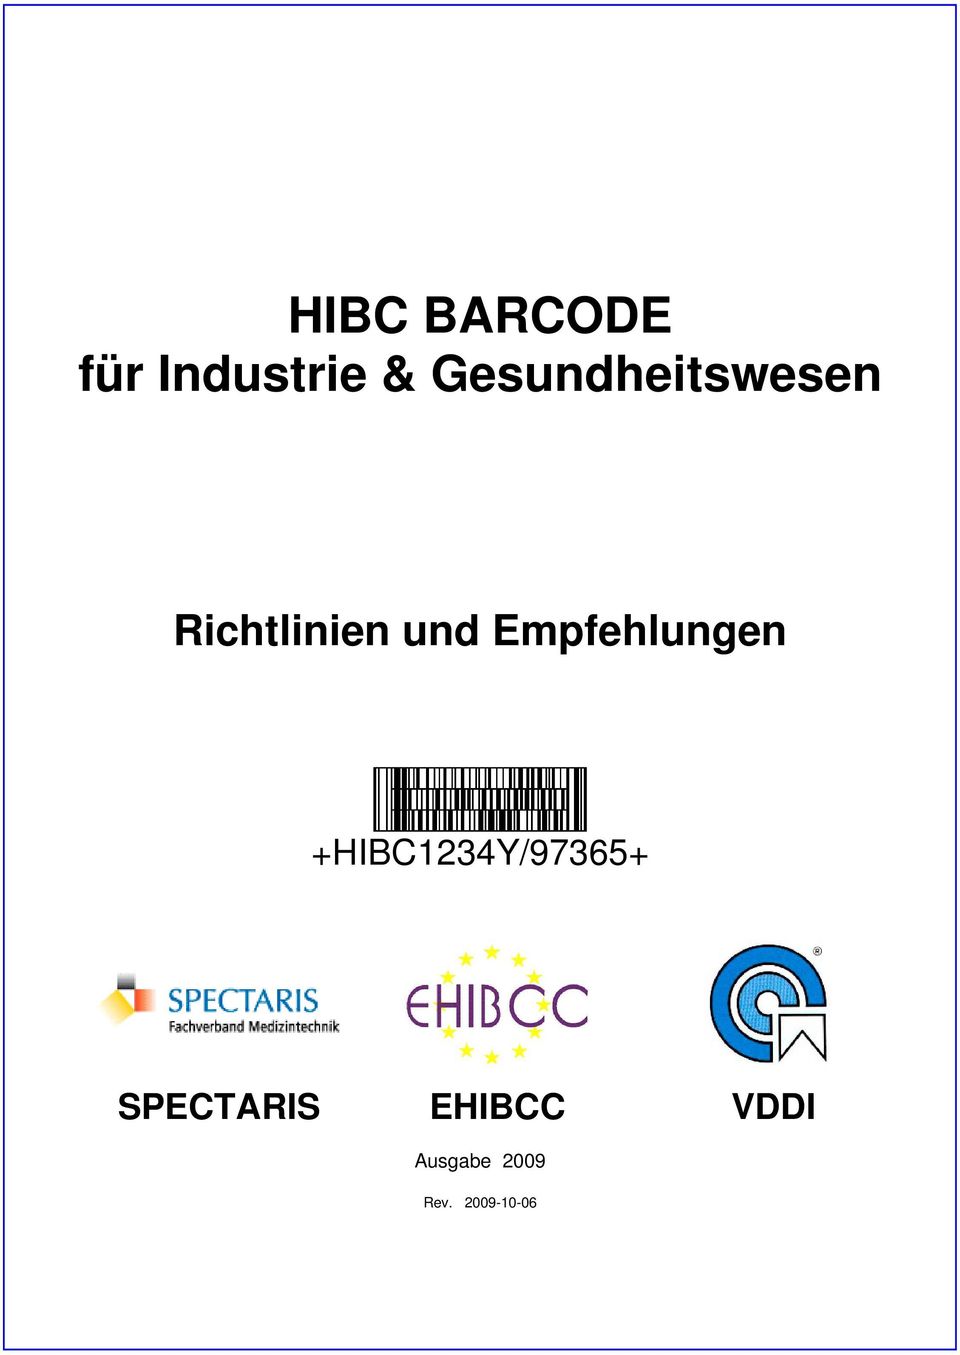 Empfehlungen +HIBC1234Y/97365+